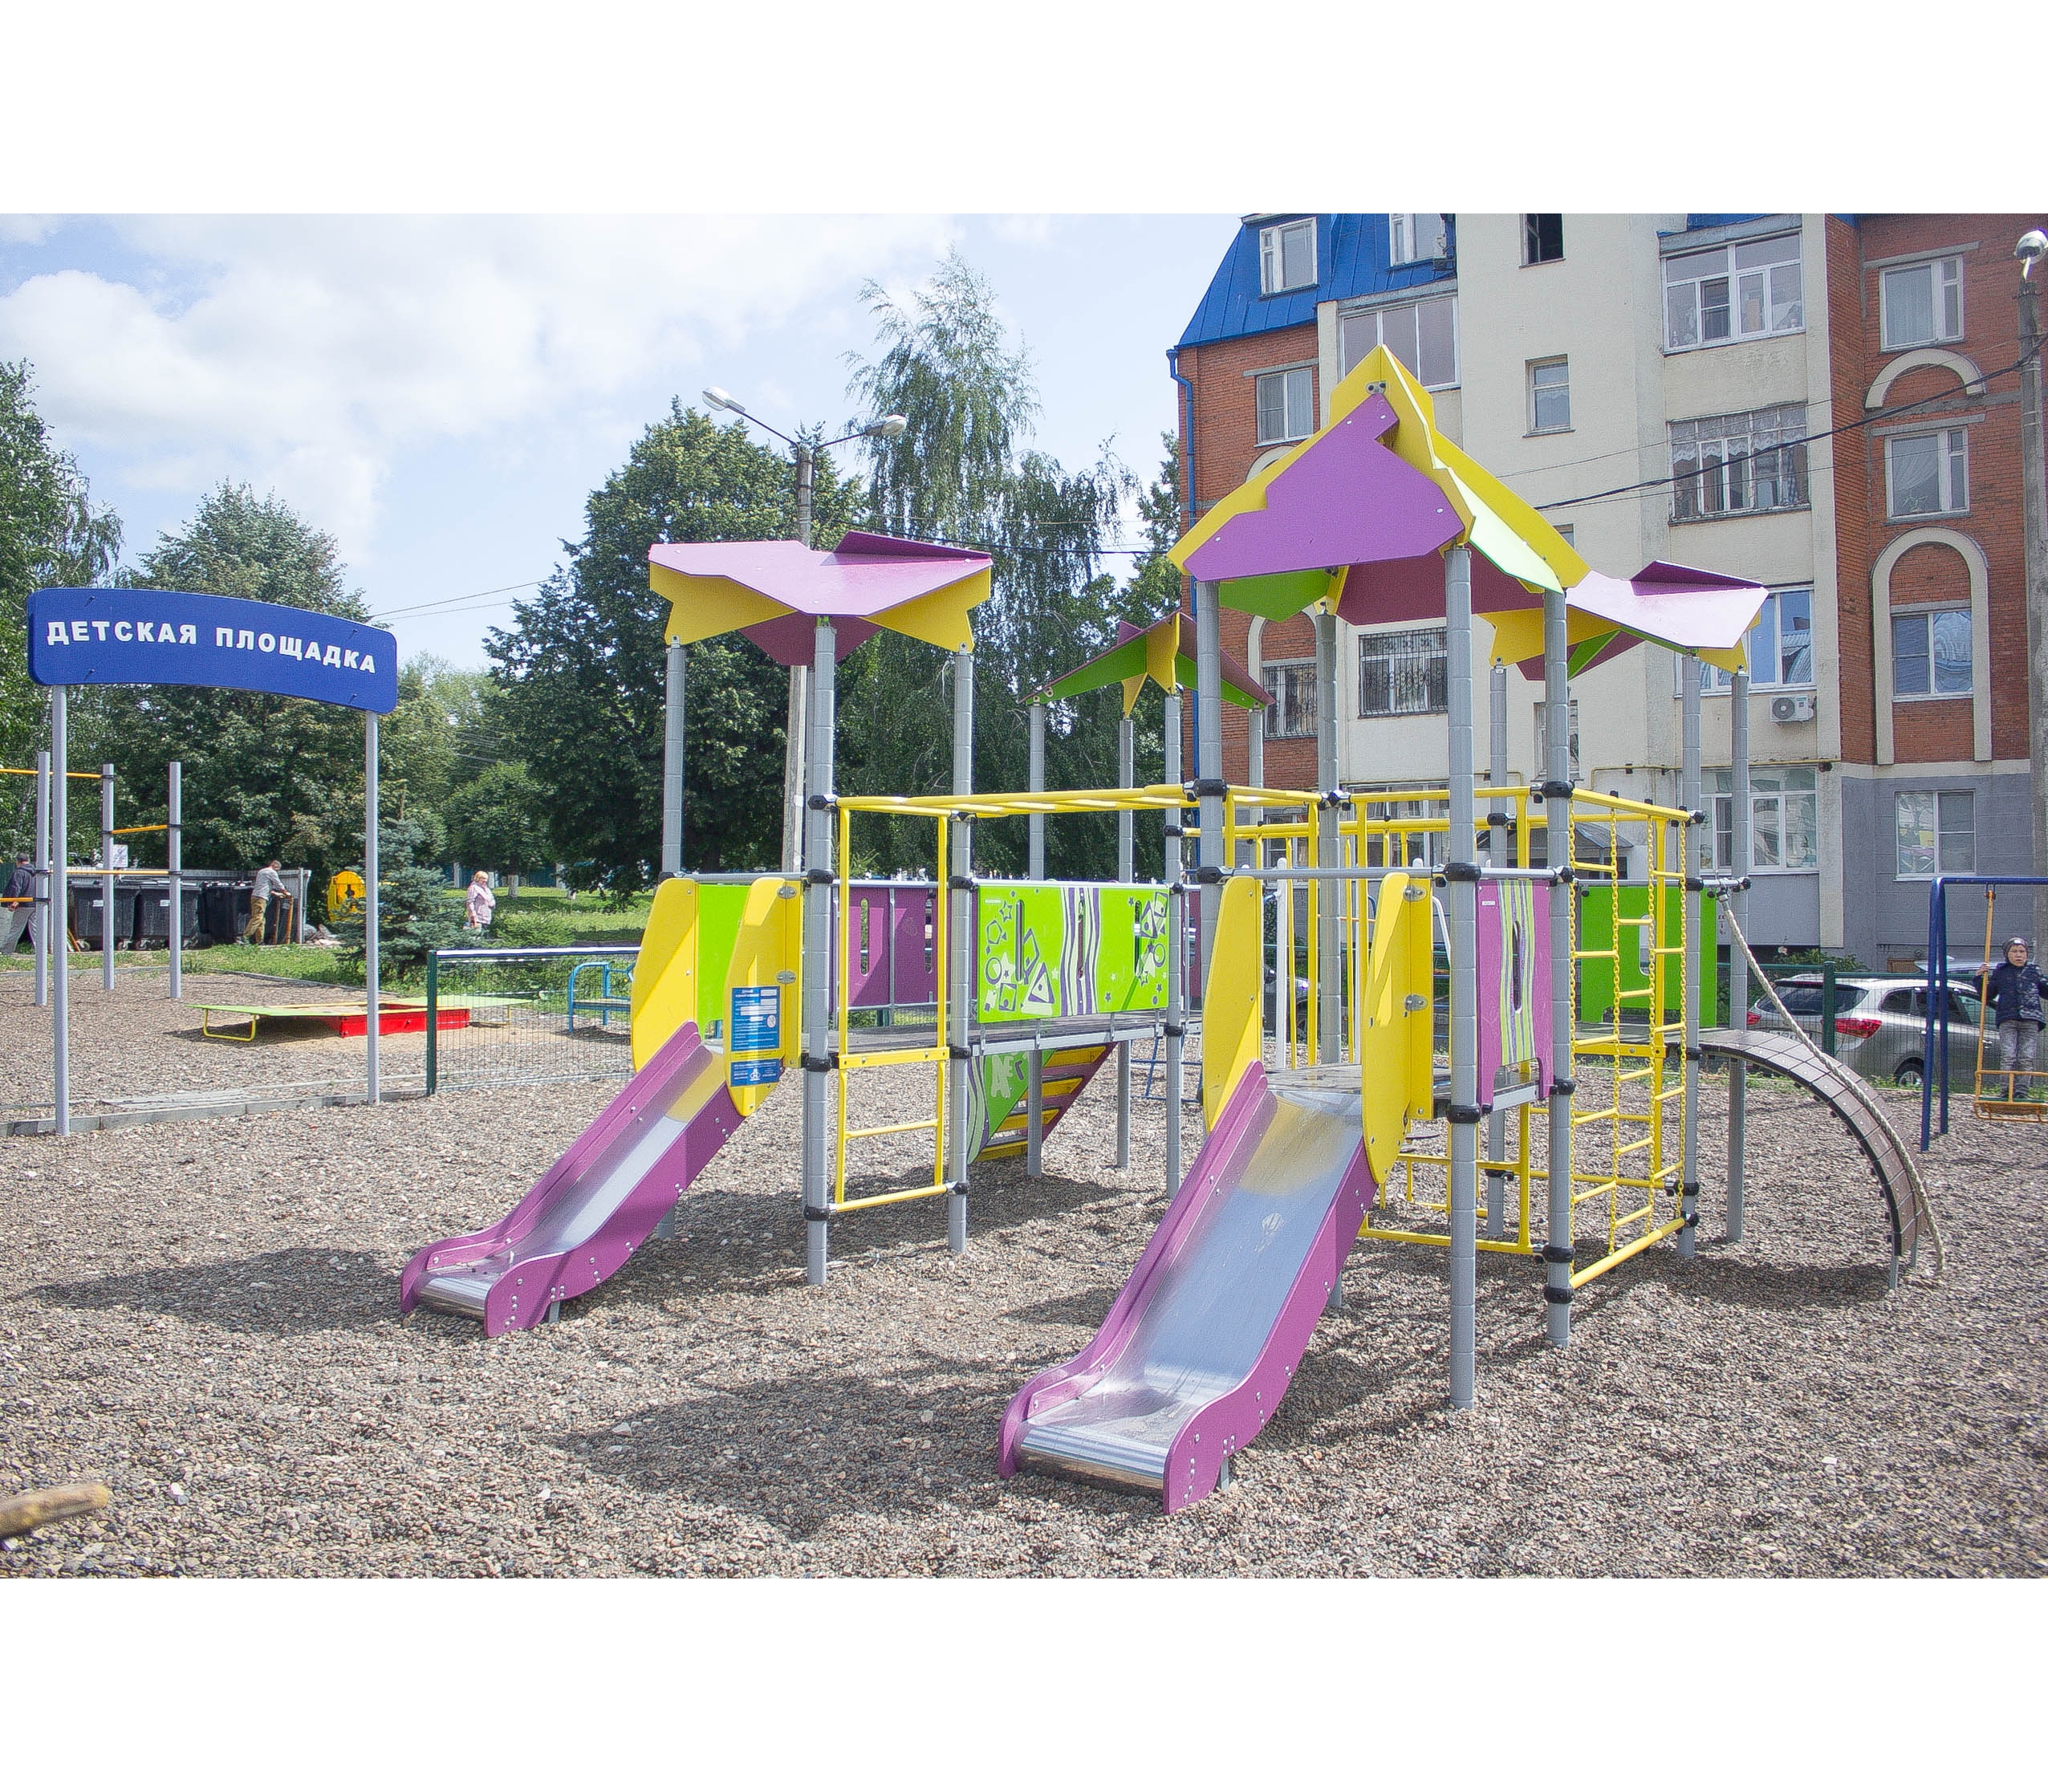 Детская площадка «Romana 101.12.00» купить по доступной цене | Детские  игровые площадки и другие группы товаров в интернет-магазине Air-Gym.ru